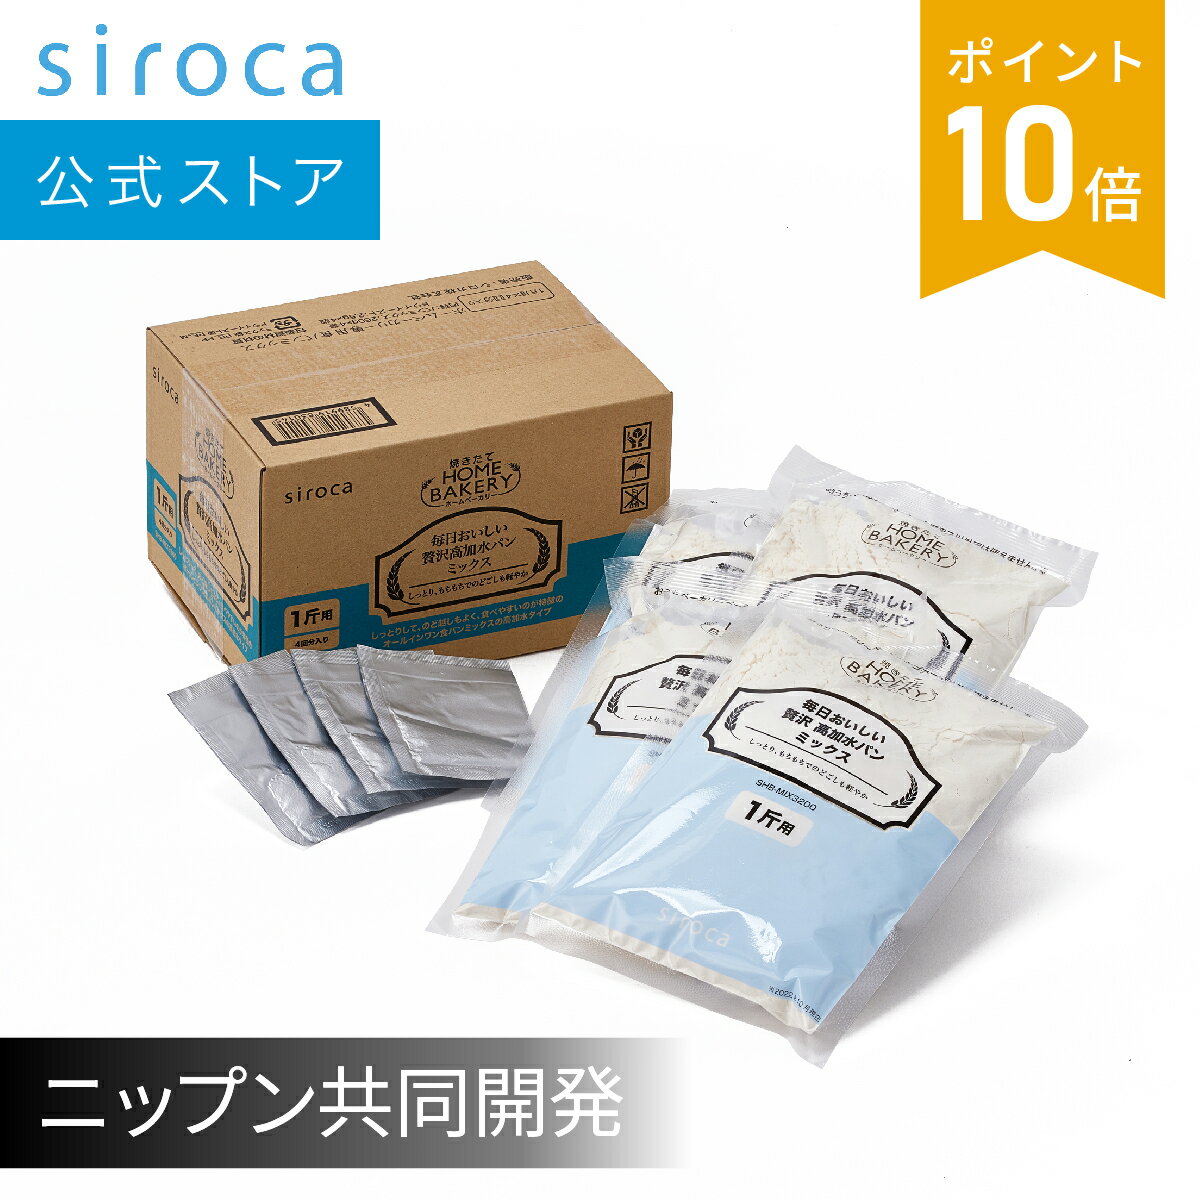 【シロカ公式】送料無料 | siroca SB-2D151専用パンミ